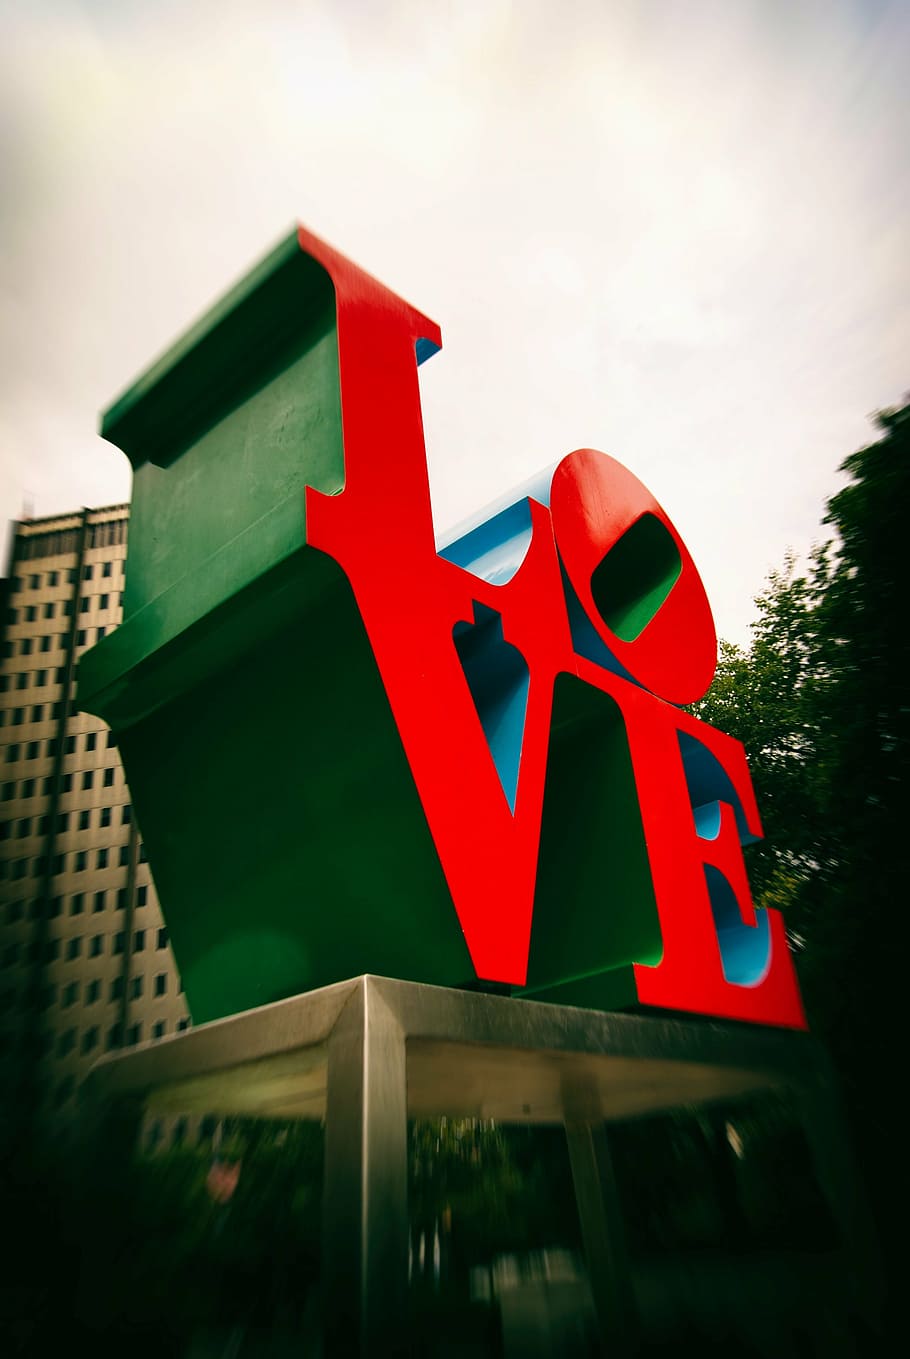 vermelho, verde, estátua do amor, arquitetura, construção, infraestrutura, projeto, borrão, amor, estrutura construída